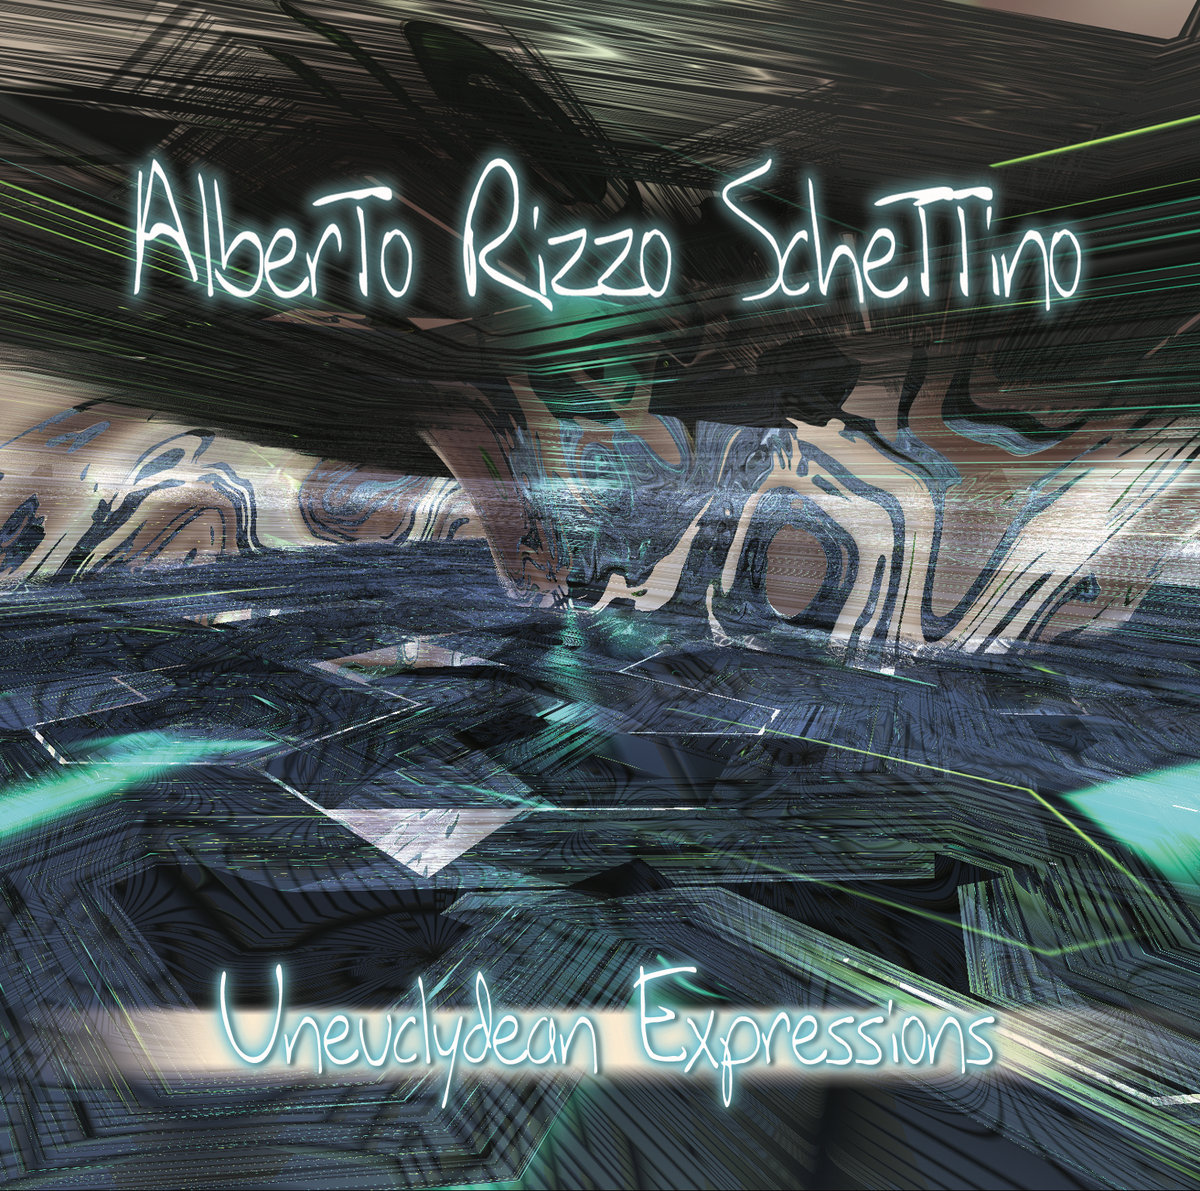 Alberto Rizzo Schettino - Uneucyldean Expressions